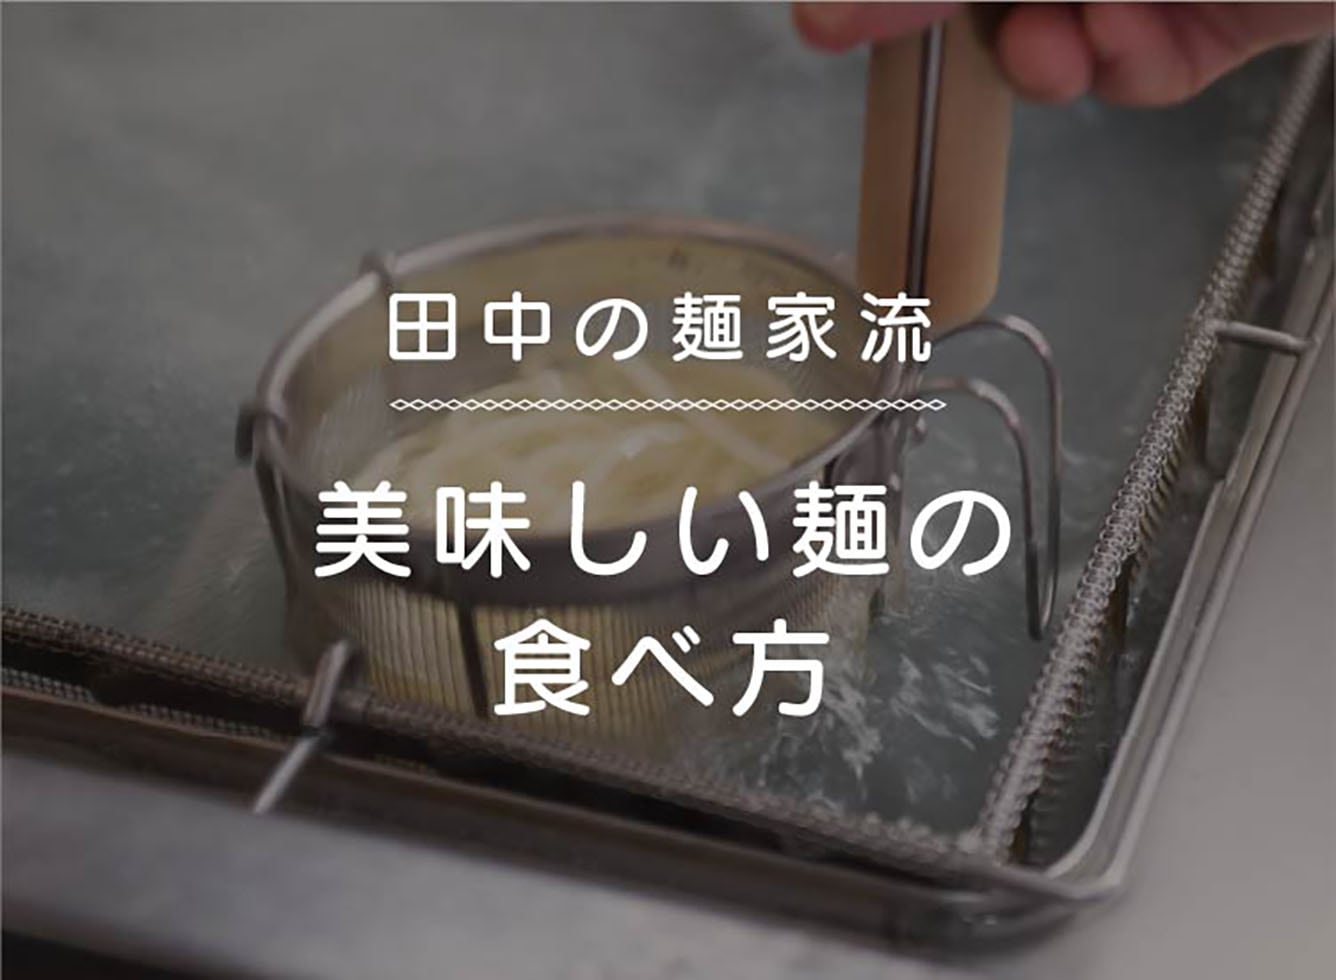 田中の麺家流 美味しい麺の食べ方